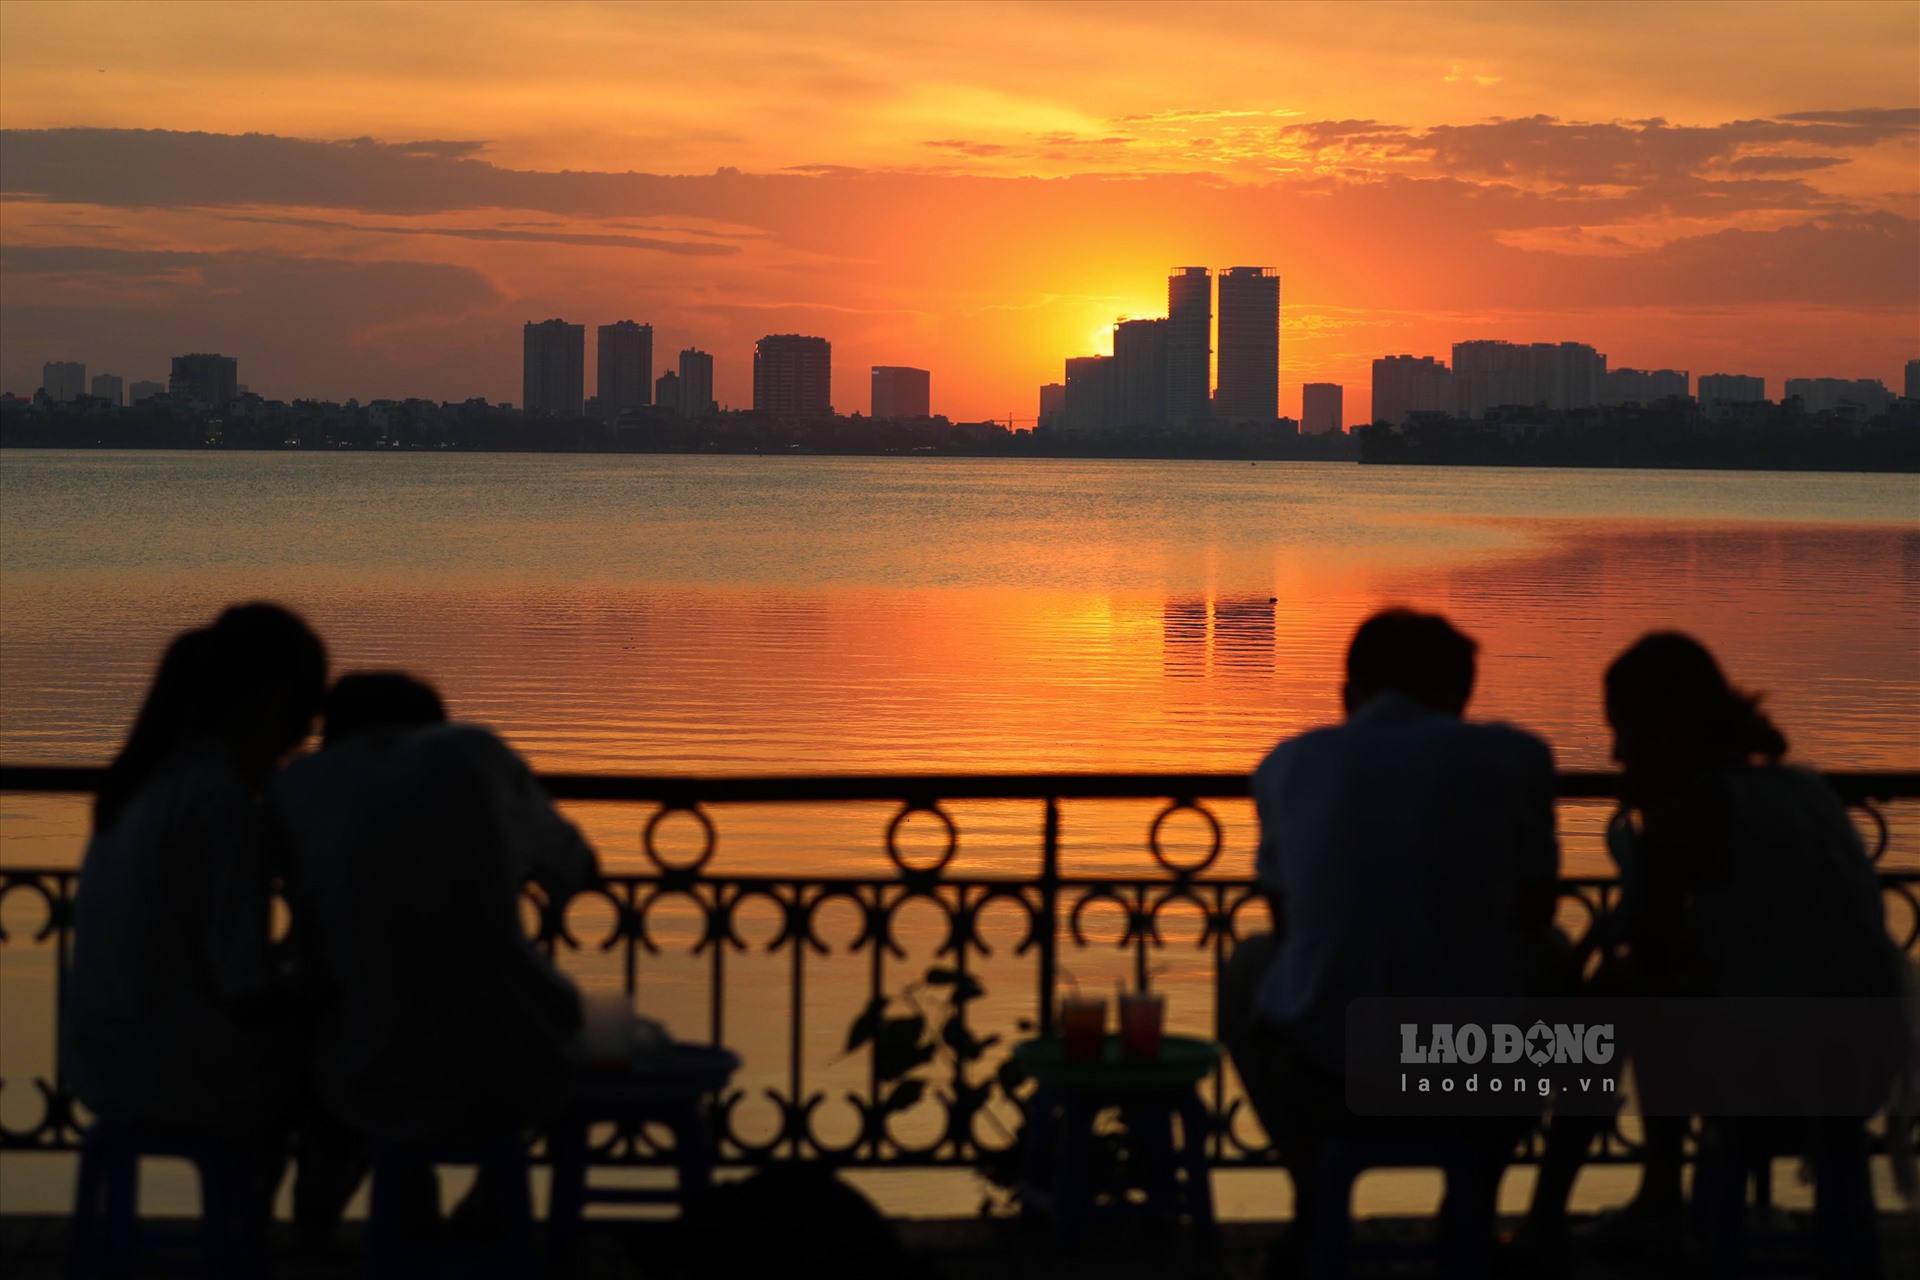 Nói về vị trí ngắm hoàng hôn đẹp ở Hà Nội thì hồ Tây vẫn là lựa chọn của nhiều người. Đến đây, du khách có thể vừa ngắm cảnh hoàng hôn đẹp lung linh, vừa tận hưởng chút gió mát từ mặt hồ thổi vào.